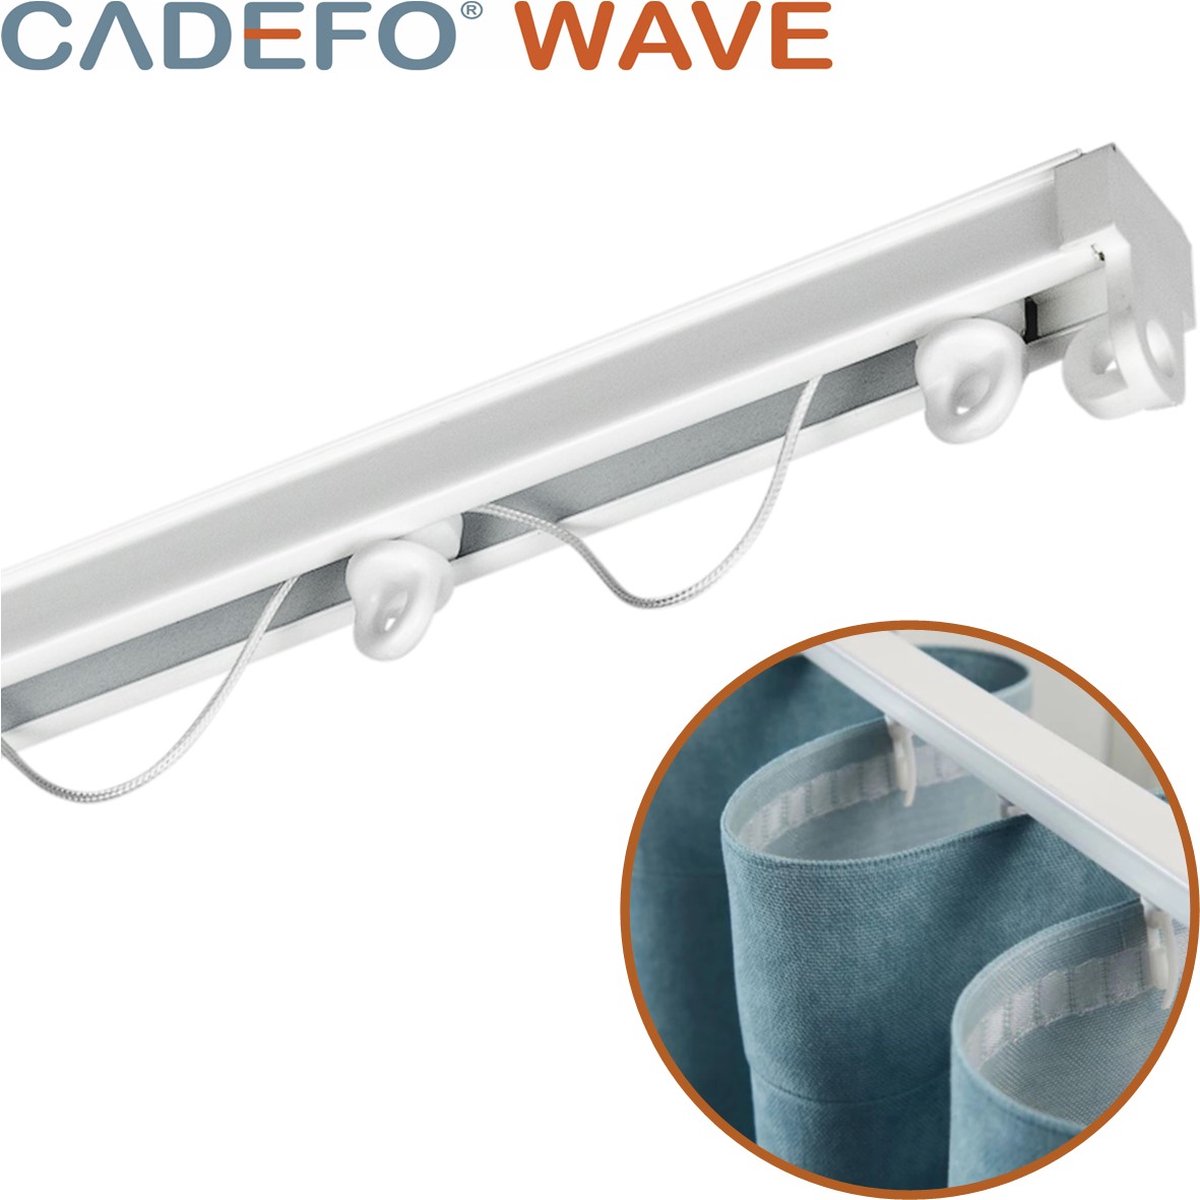 CADEFO WAVE (401 - 450 cm) Gordijnrails - Compleet op maat! - UIT 1 STUK - Leverbaar tot 6 meter - Plafondbevestiging - Lengte 433 cm